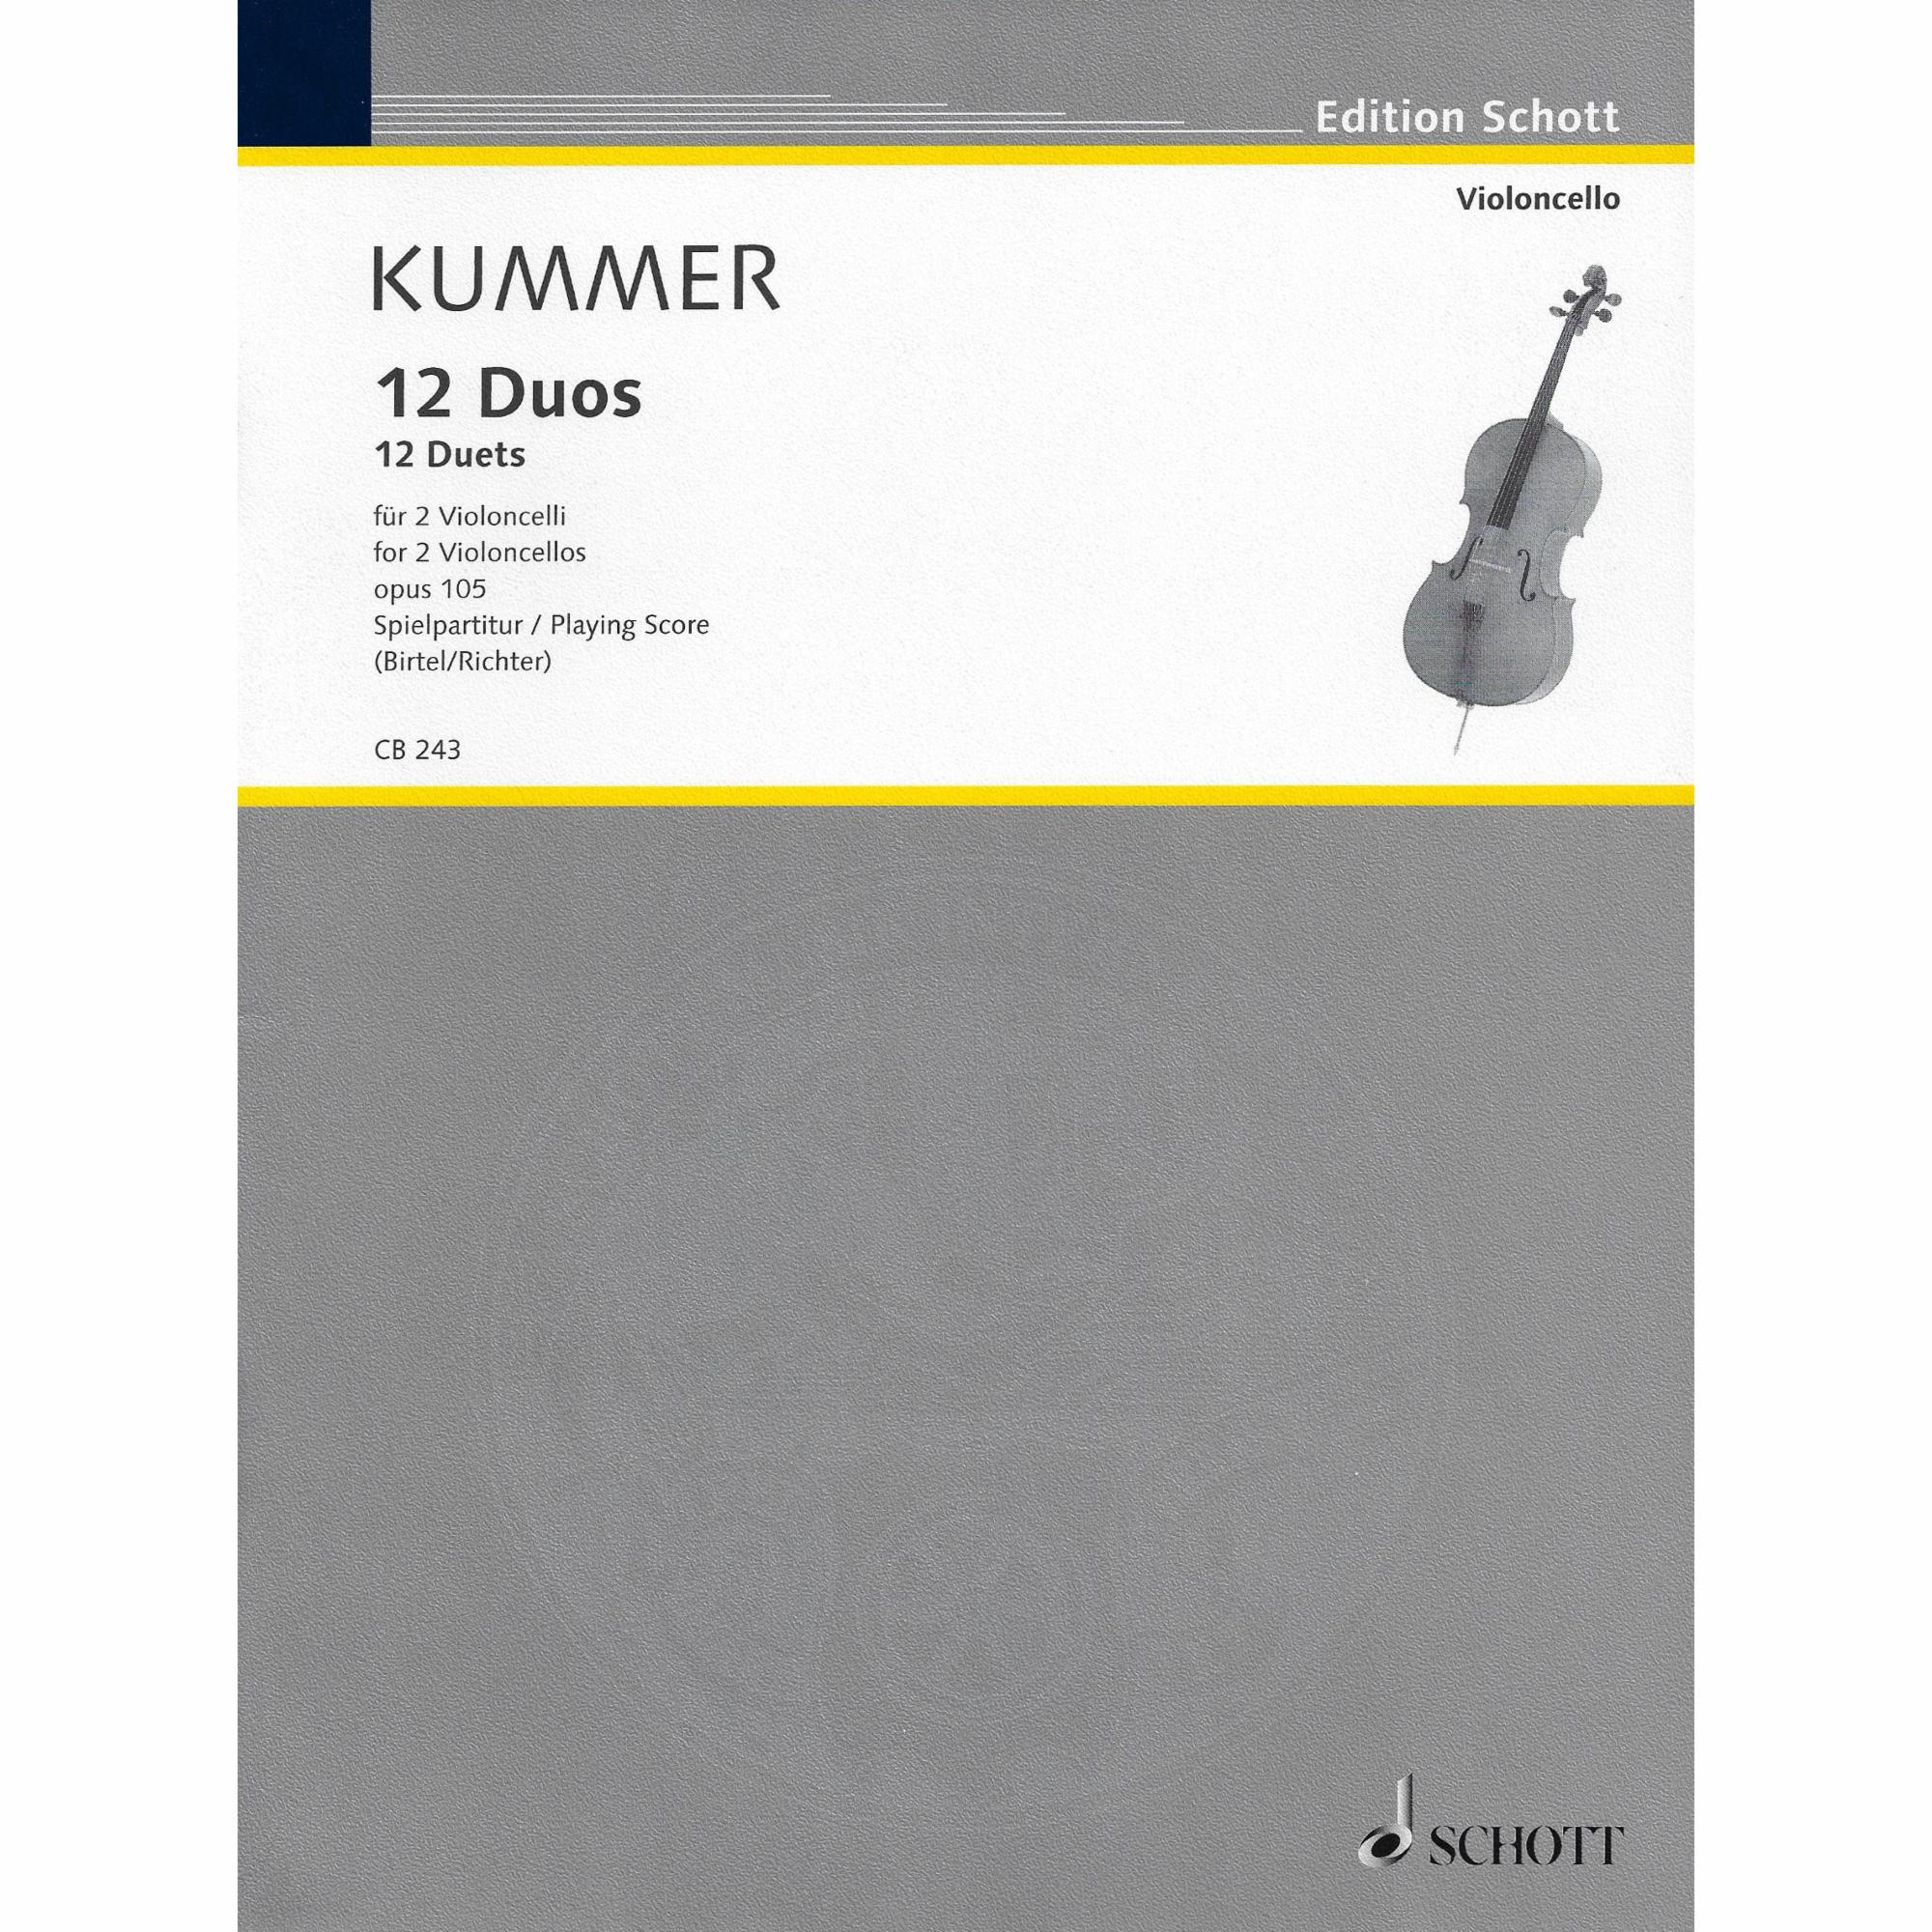 Kummer -- Twelve Duets, Op. 105 for Two Cellos